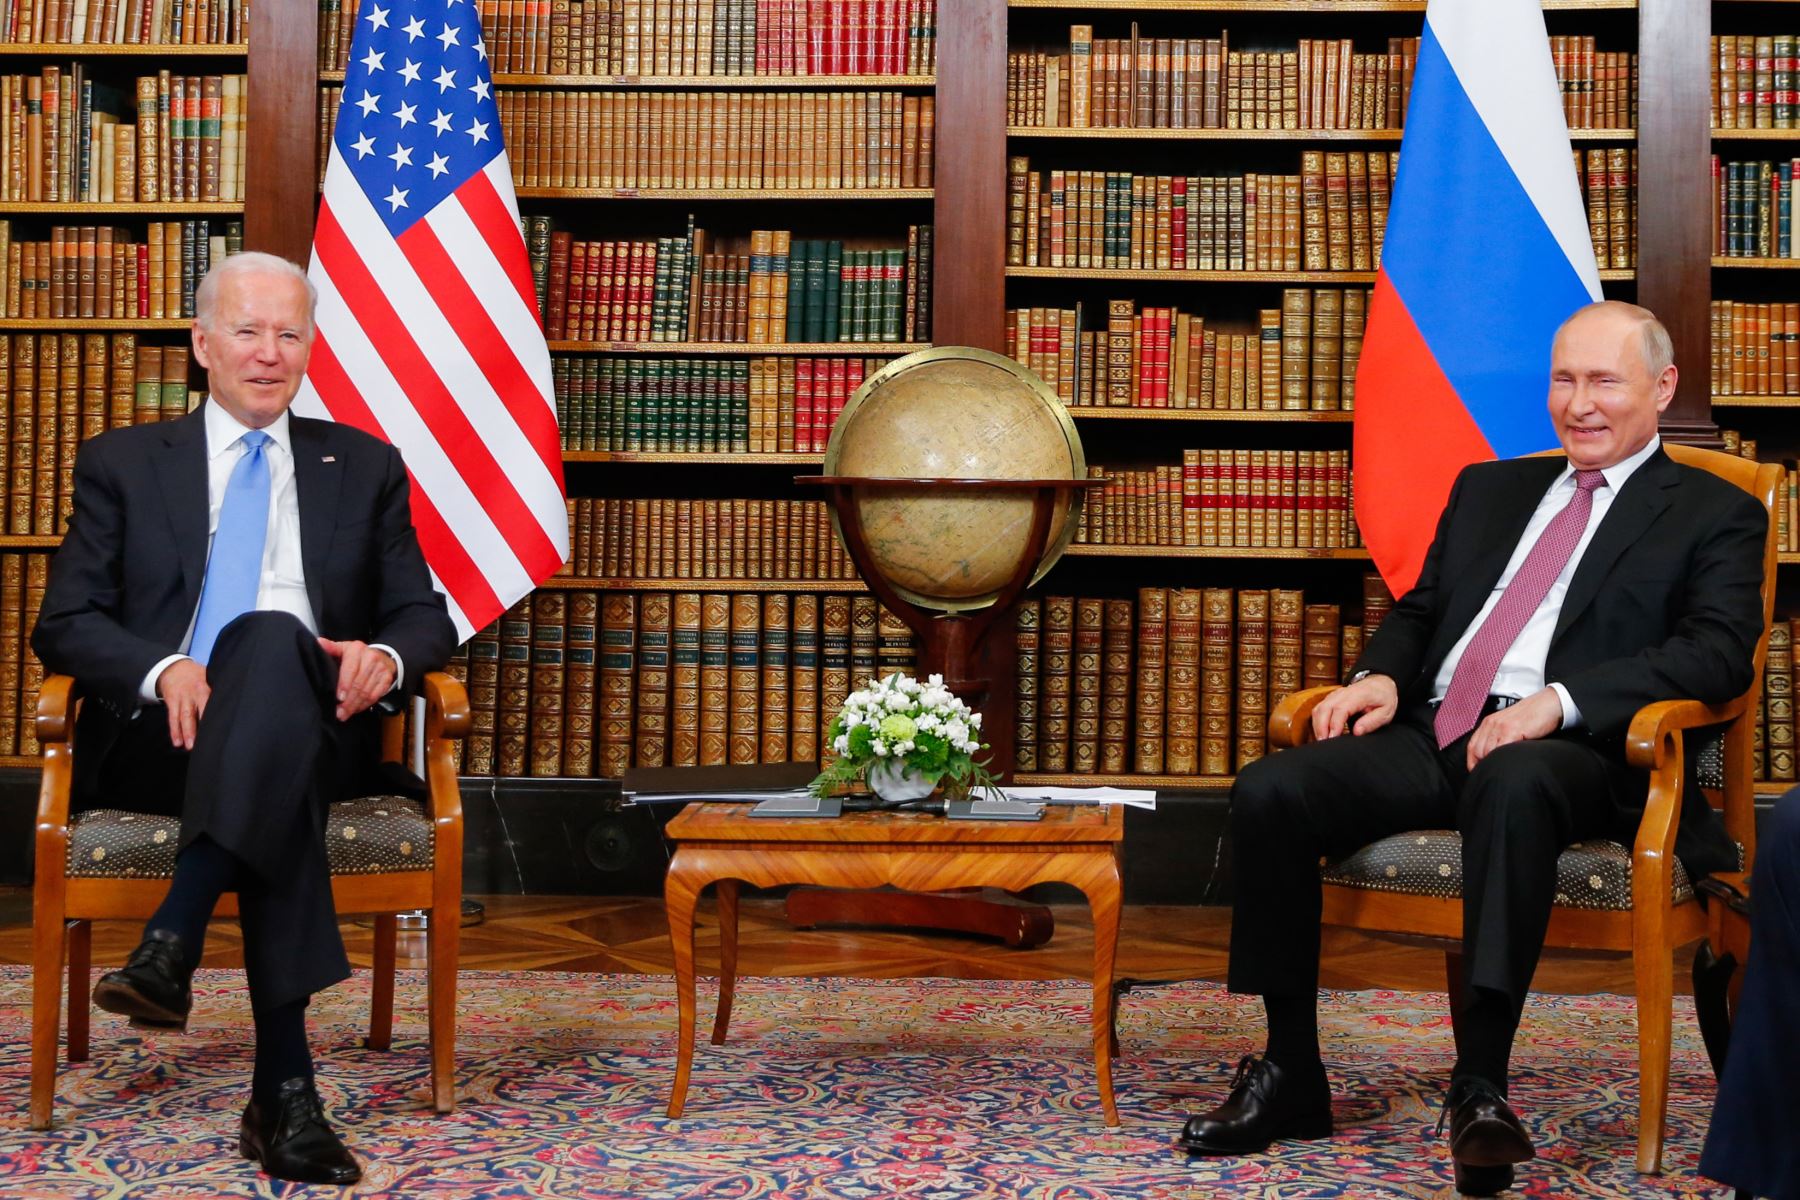 La primera ronda de conversaciones, en una de las bibliotecas, incluye a los ministros de Exteriores, el estadounidense Antony Blinken y el ruso Serguéi Lavrov. Foto: AFP